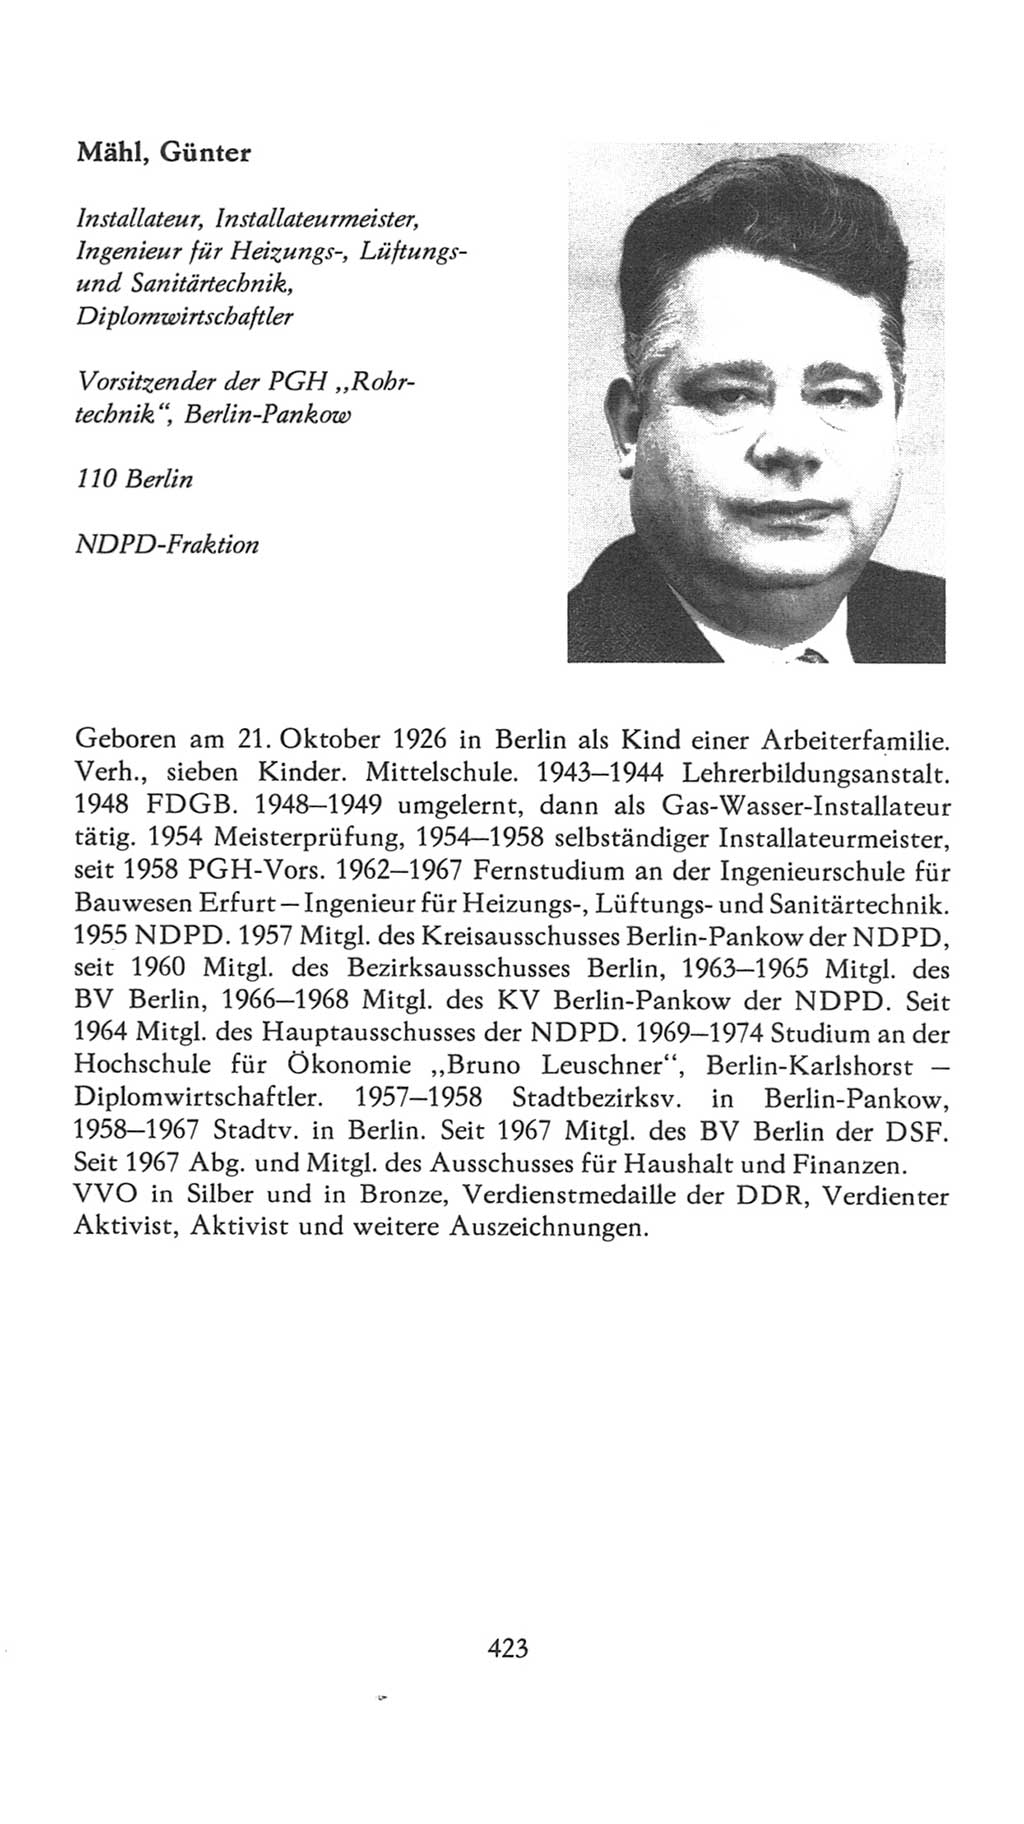 Volkskammer (VK) der Deutschen Demokratischen Republik (DDR), 7. Wahlperiode 1976-1981, Seite 423 (VK. DDR 7. WP. 1976-1981, S. 423)